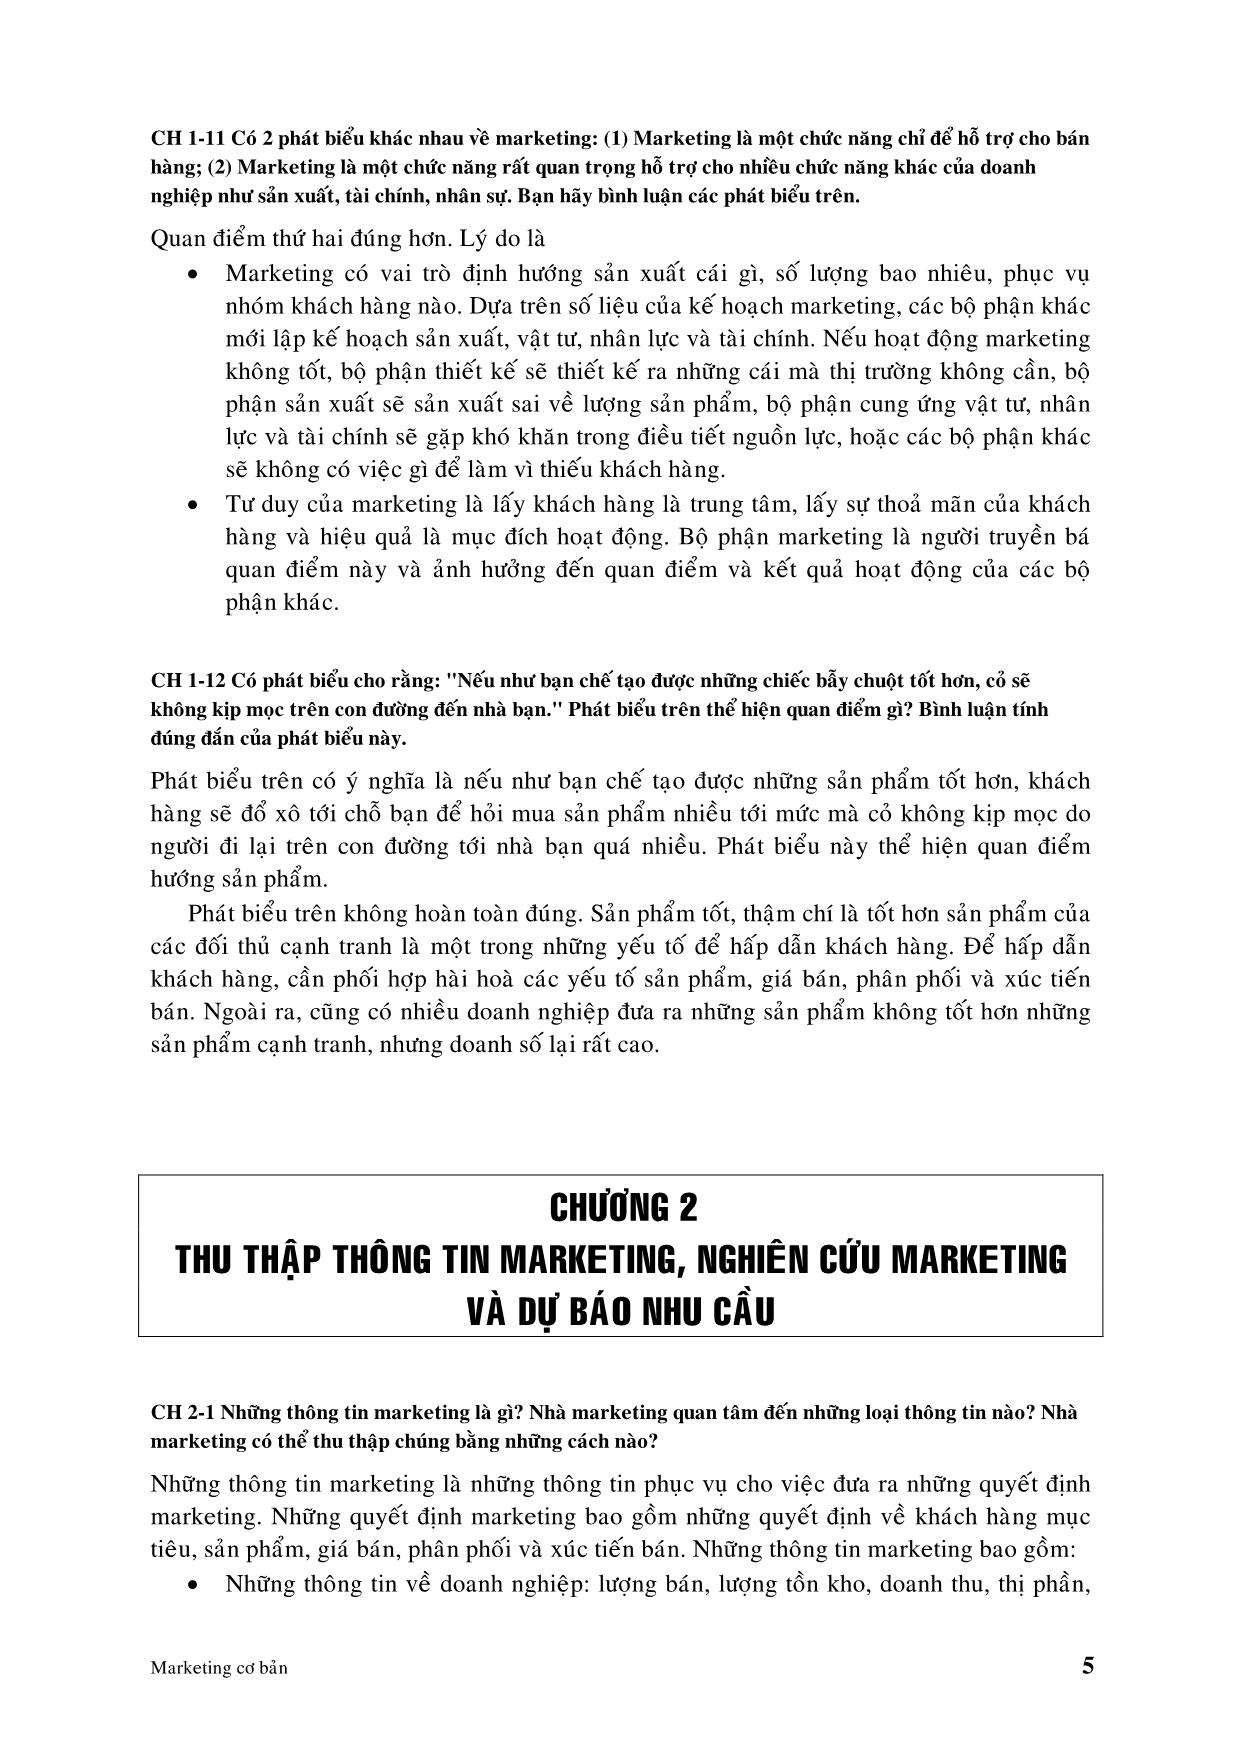 Hướng dẫn và trả lời câu hỏi ôn tập marketing cơ bản trang 5